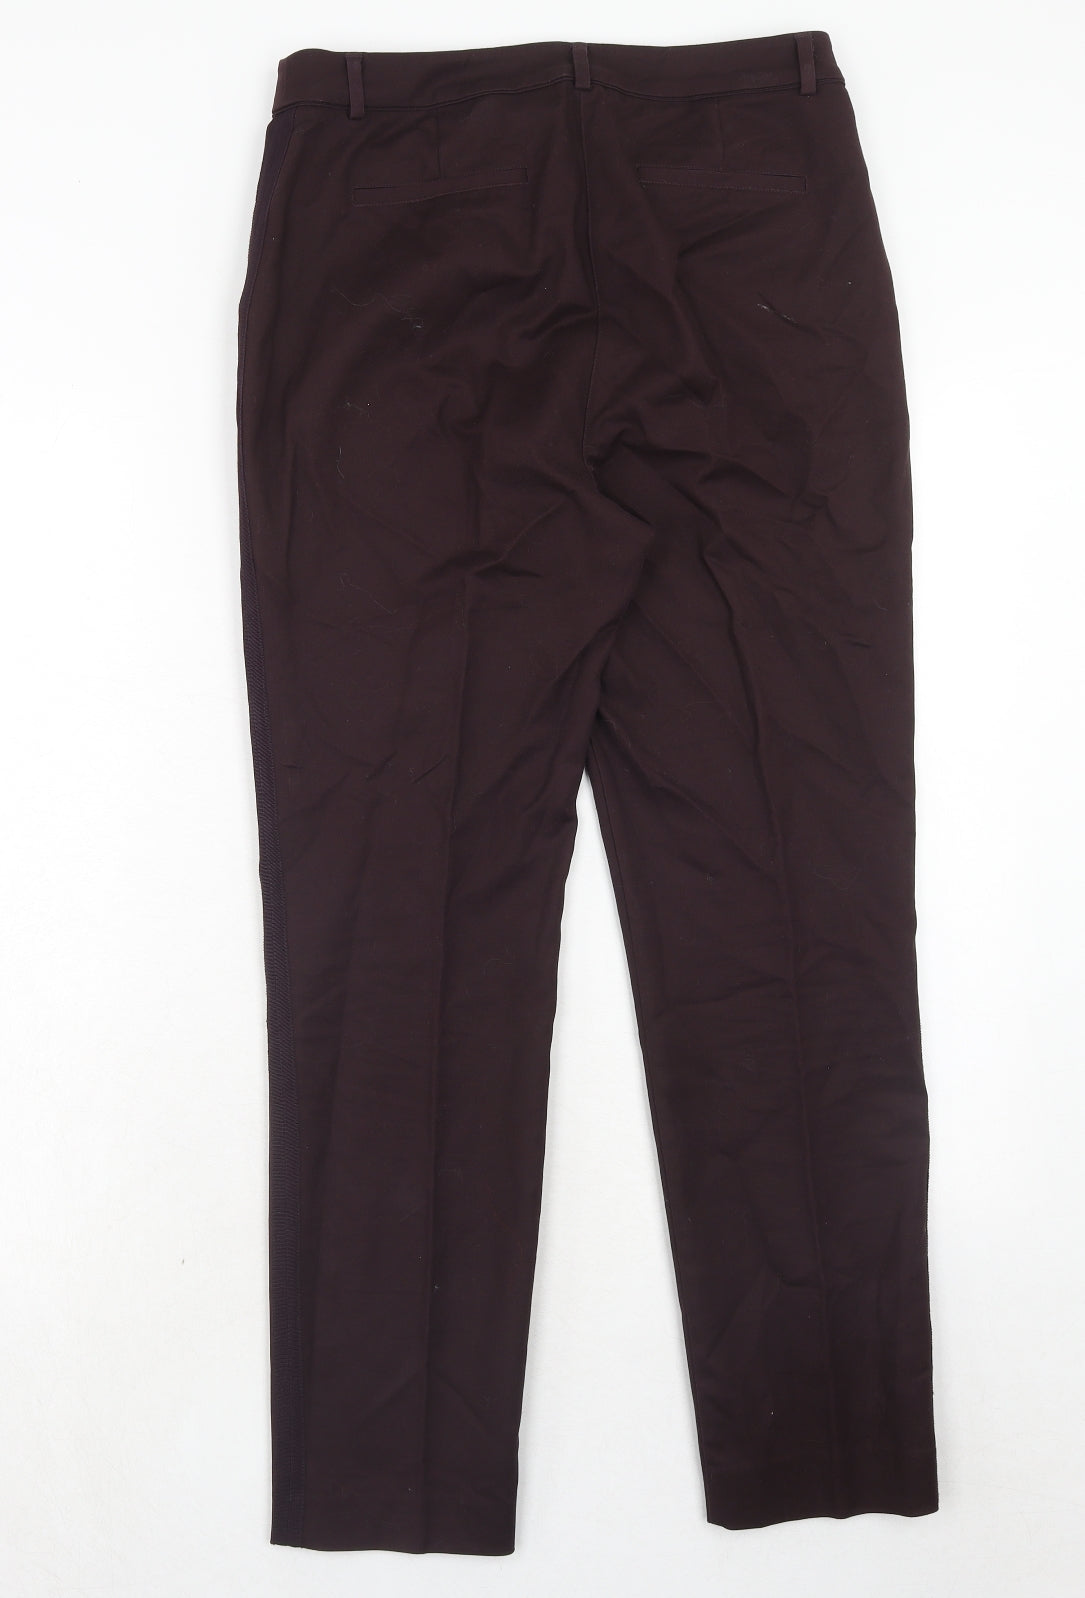 Mint Velvet Womens Purple Polyester Trousers Size 10 Regular Hook & Eye